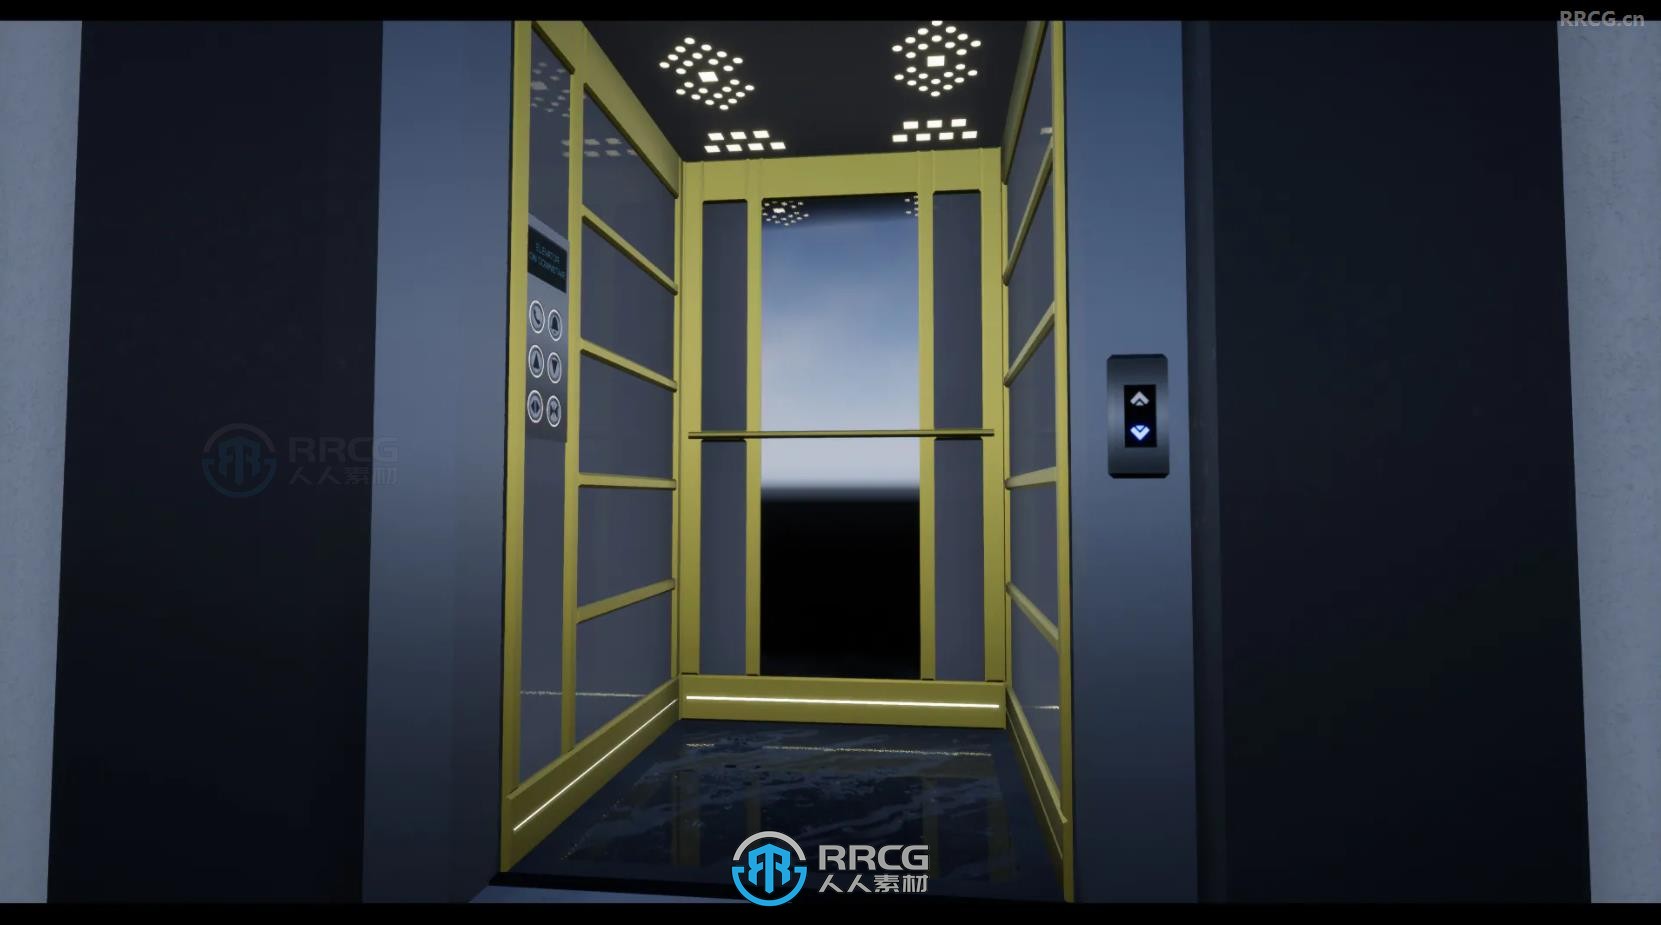 电梯蓝图套件虚幻引擎UE游戏素材